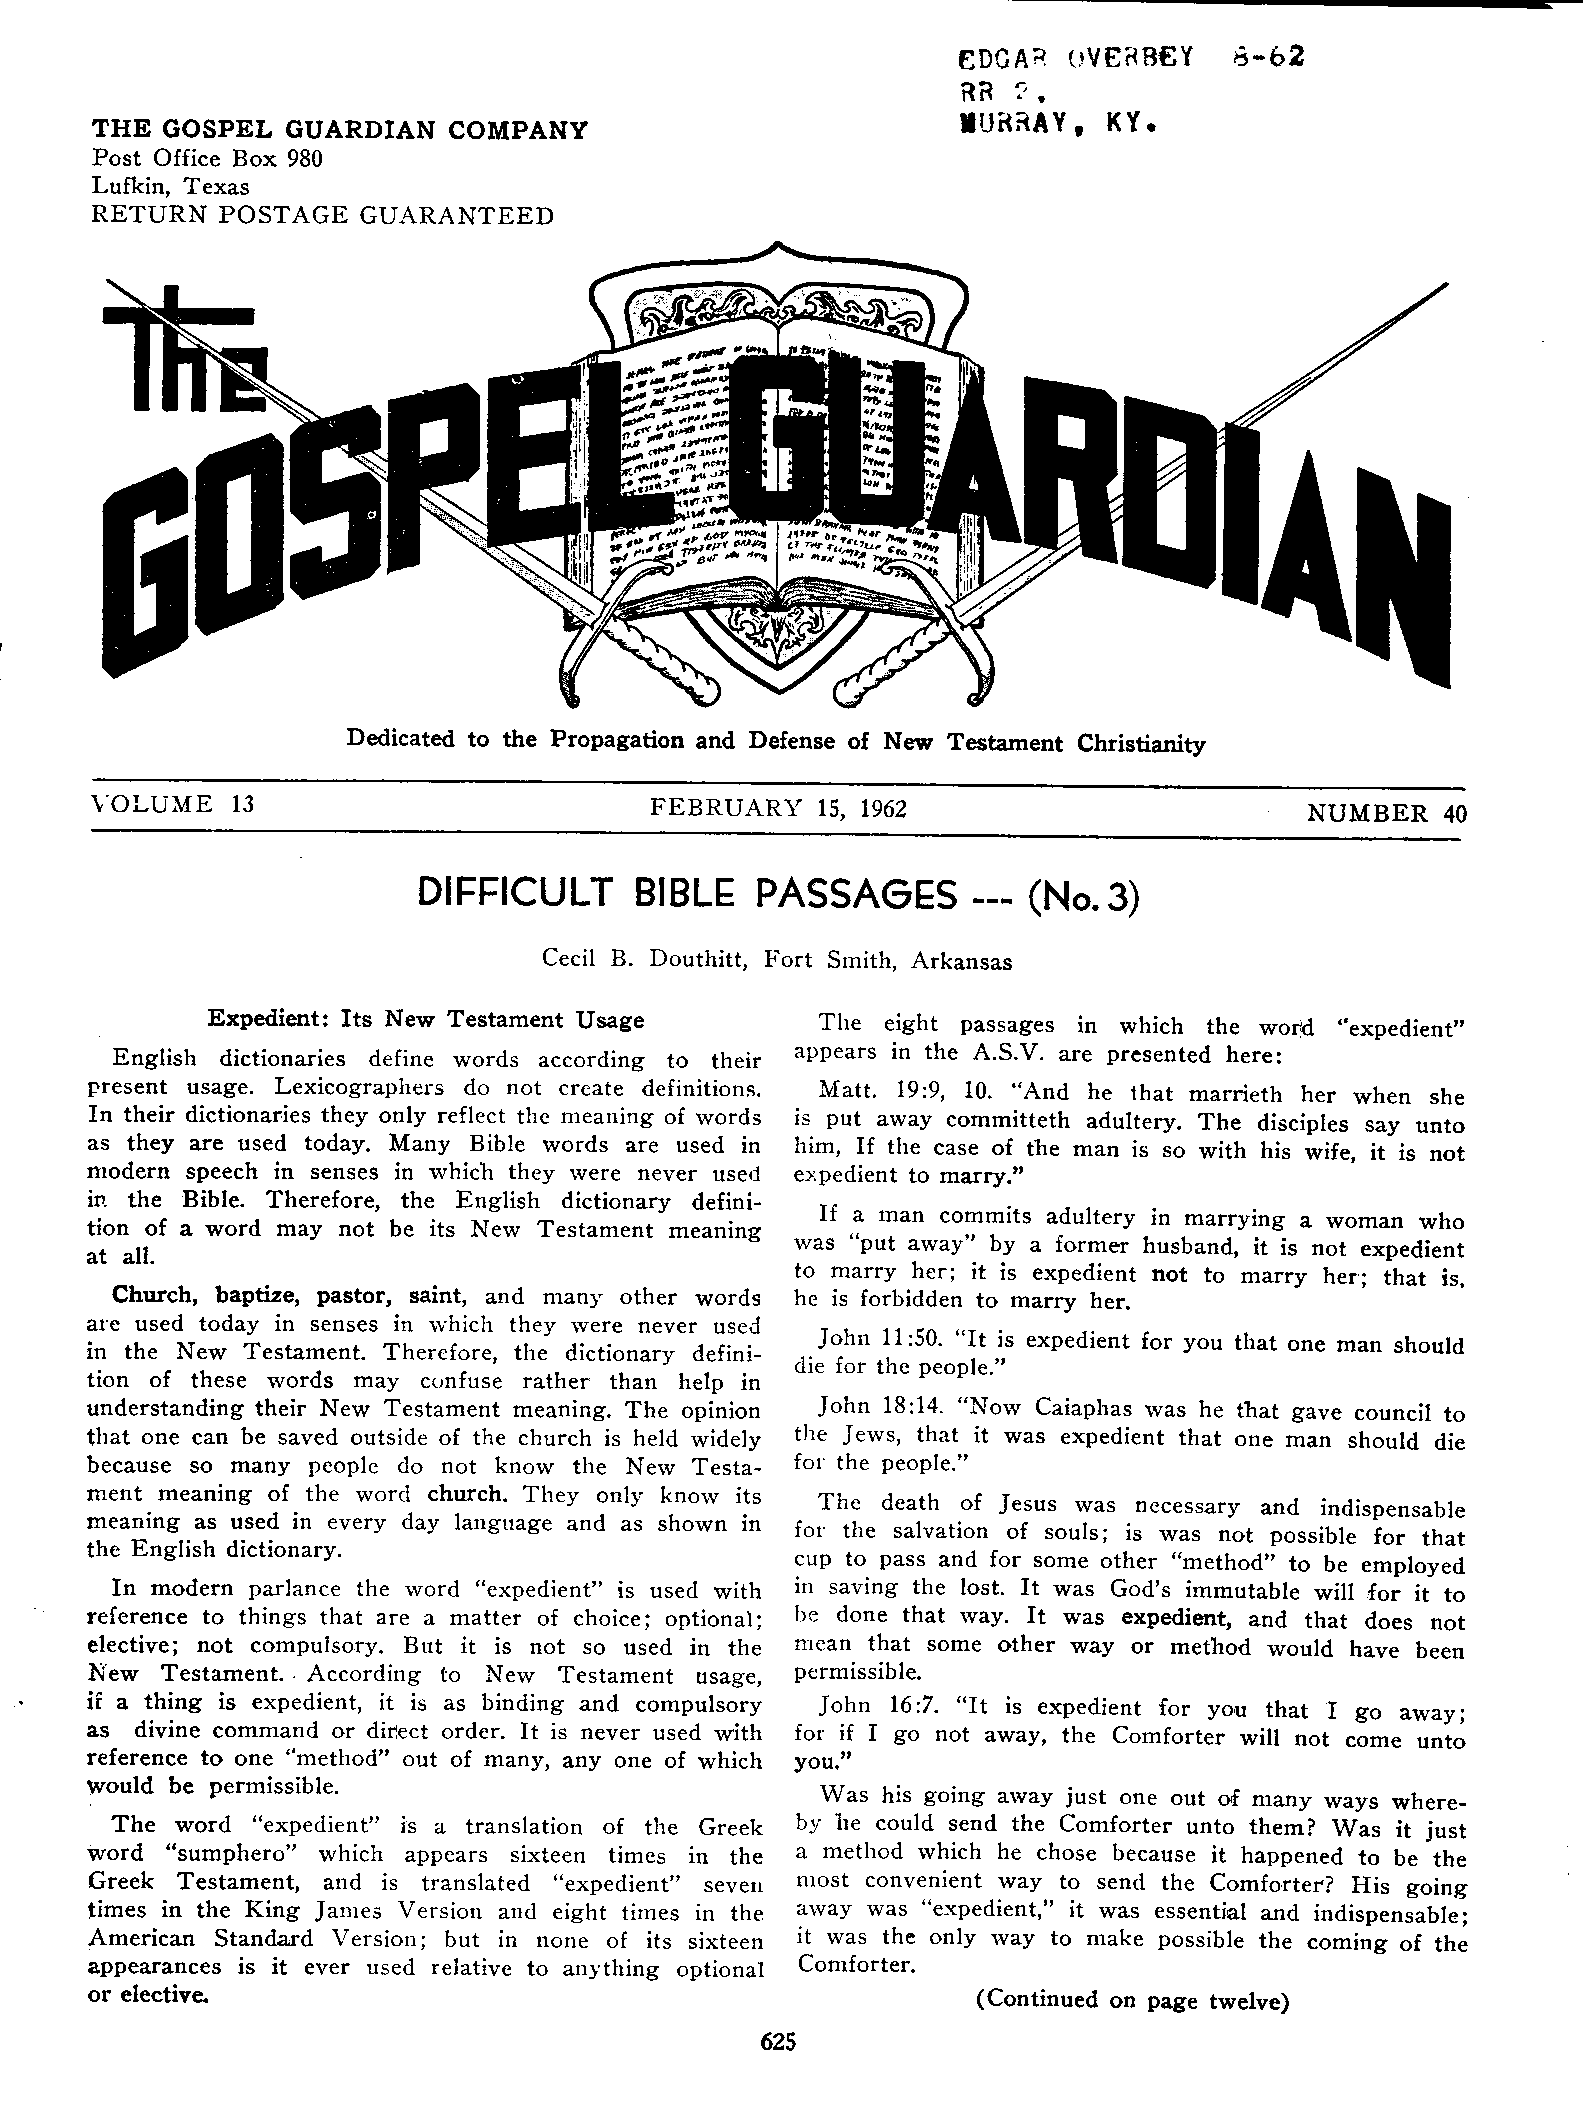 Gospel Guardian Original: Vol.13 No.40 Pg.1